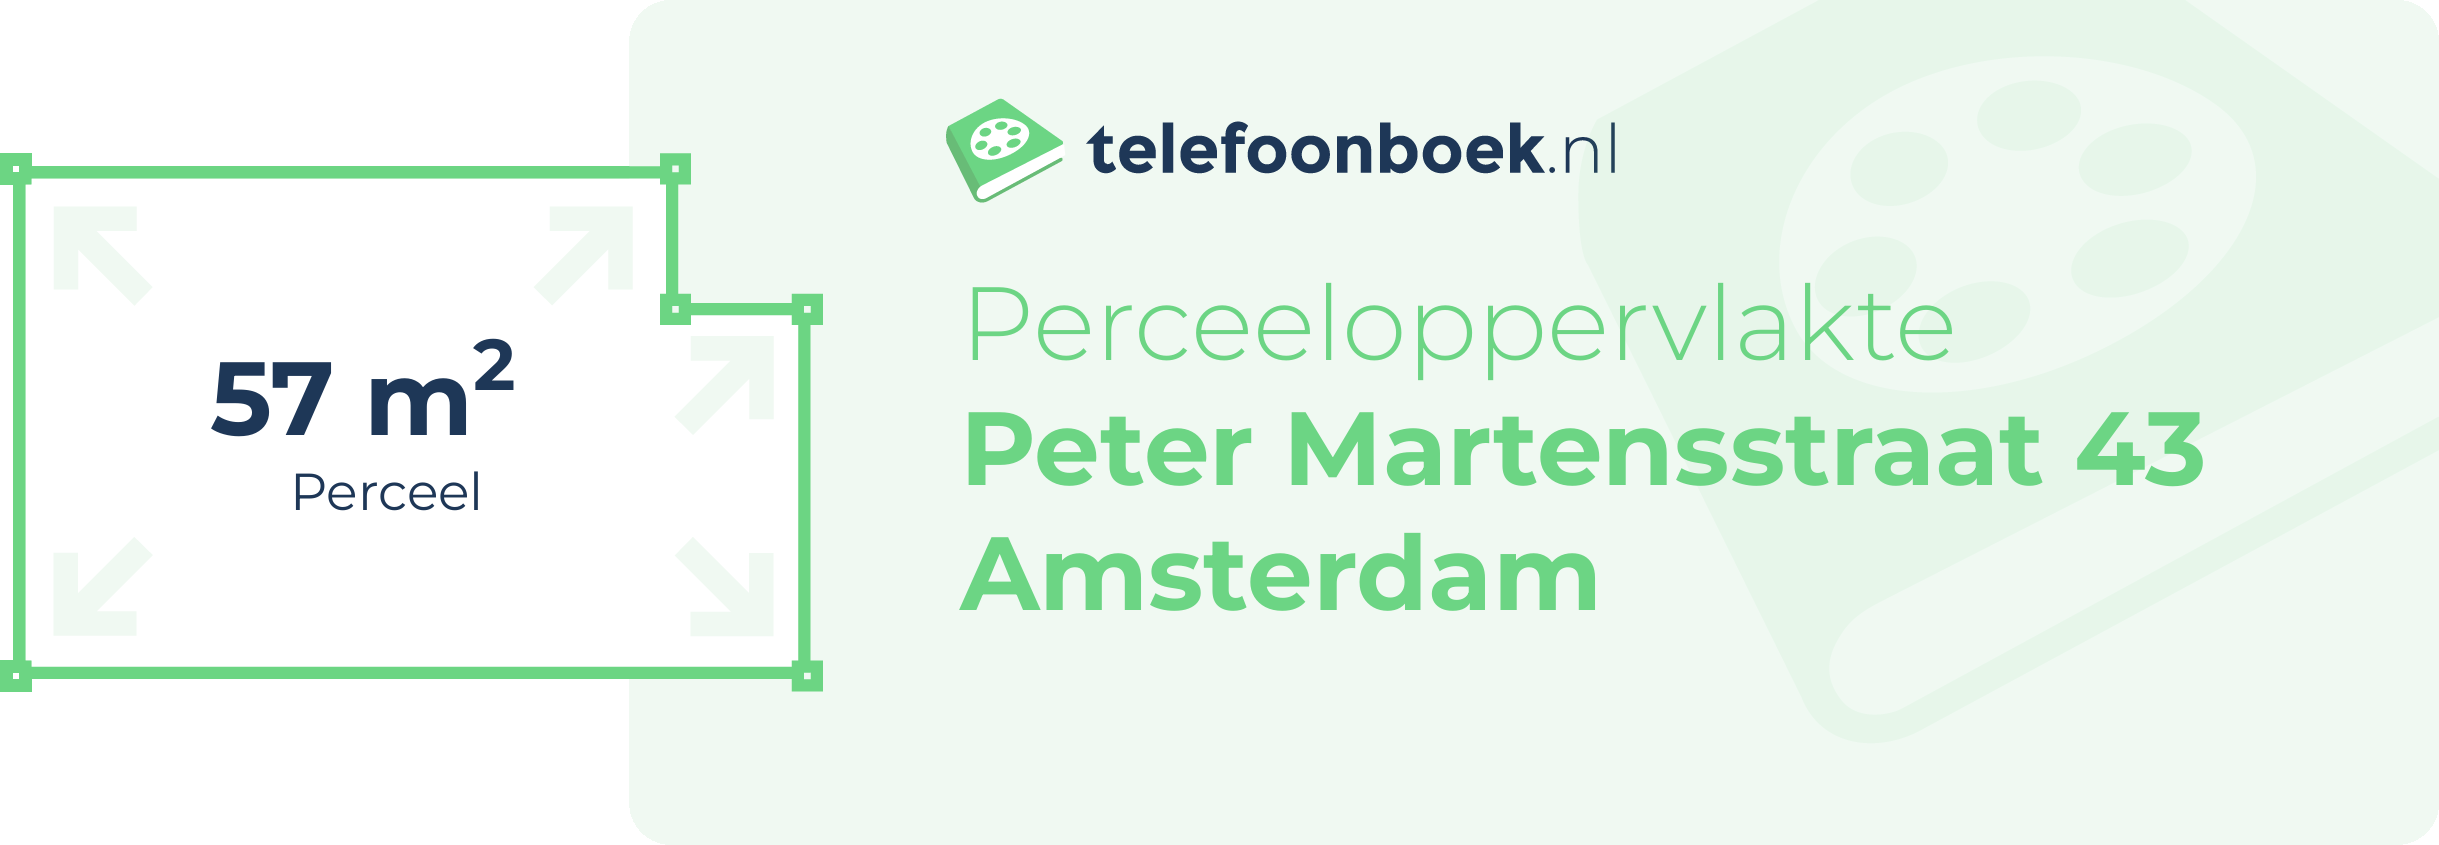 Perceeloppervlakte Peter Martensstraat 43 Amsterdam